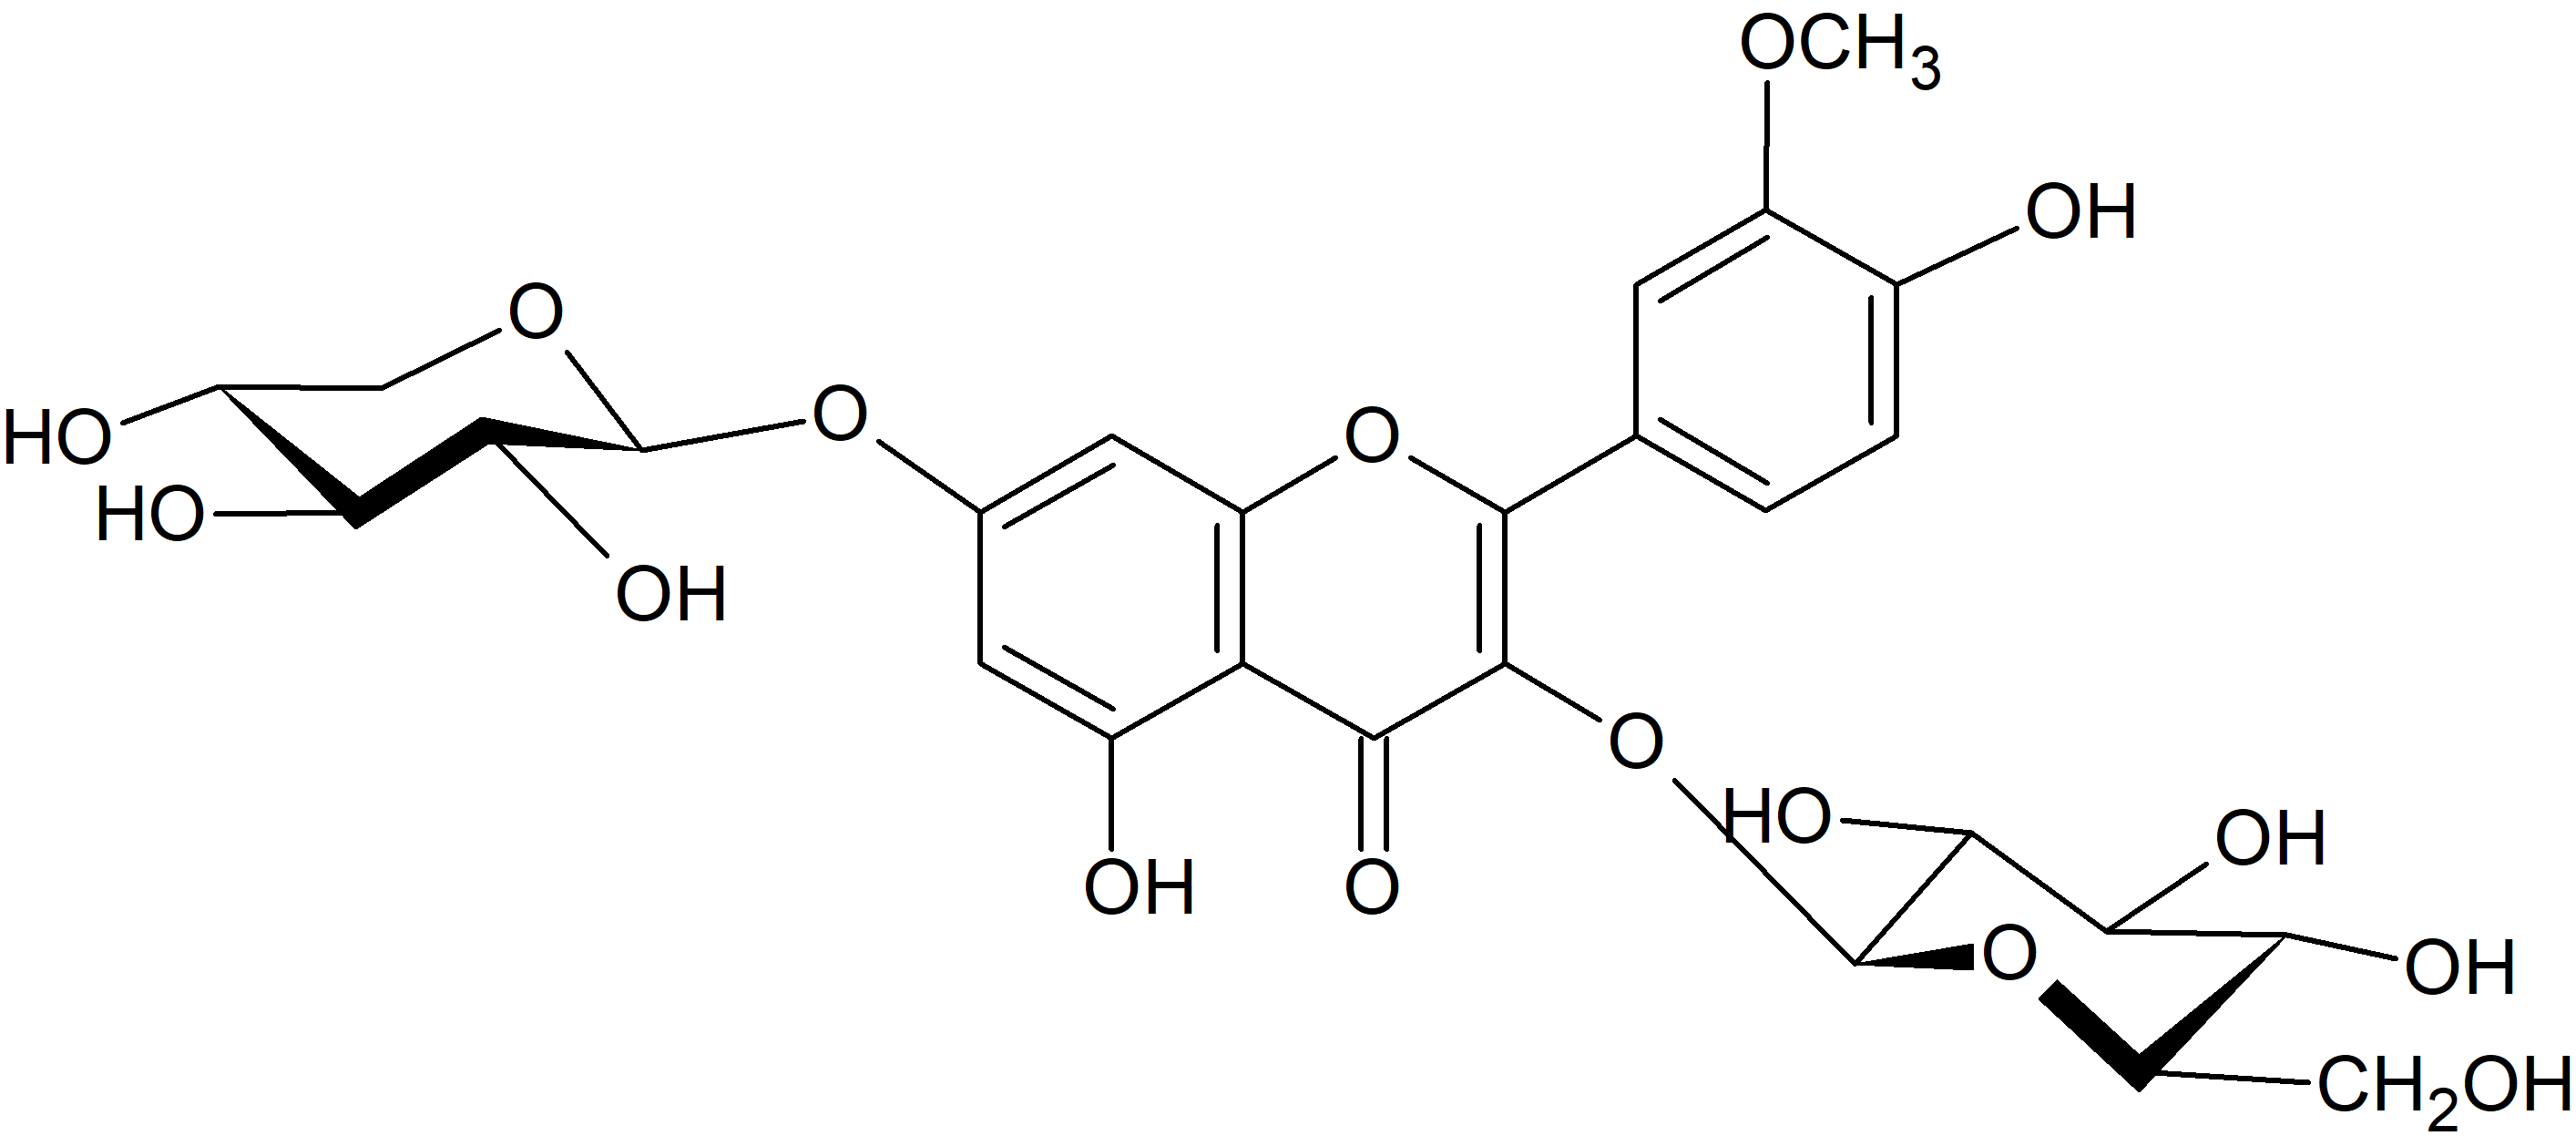 Isorhamnetin-3-O-glucoside-7-O-xyloside